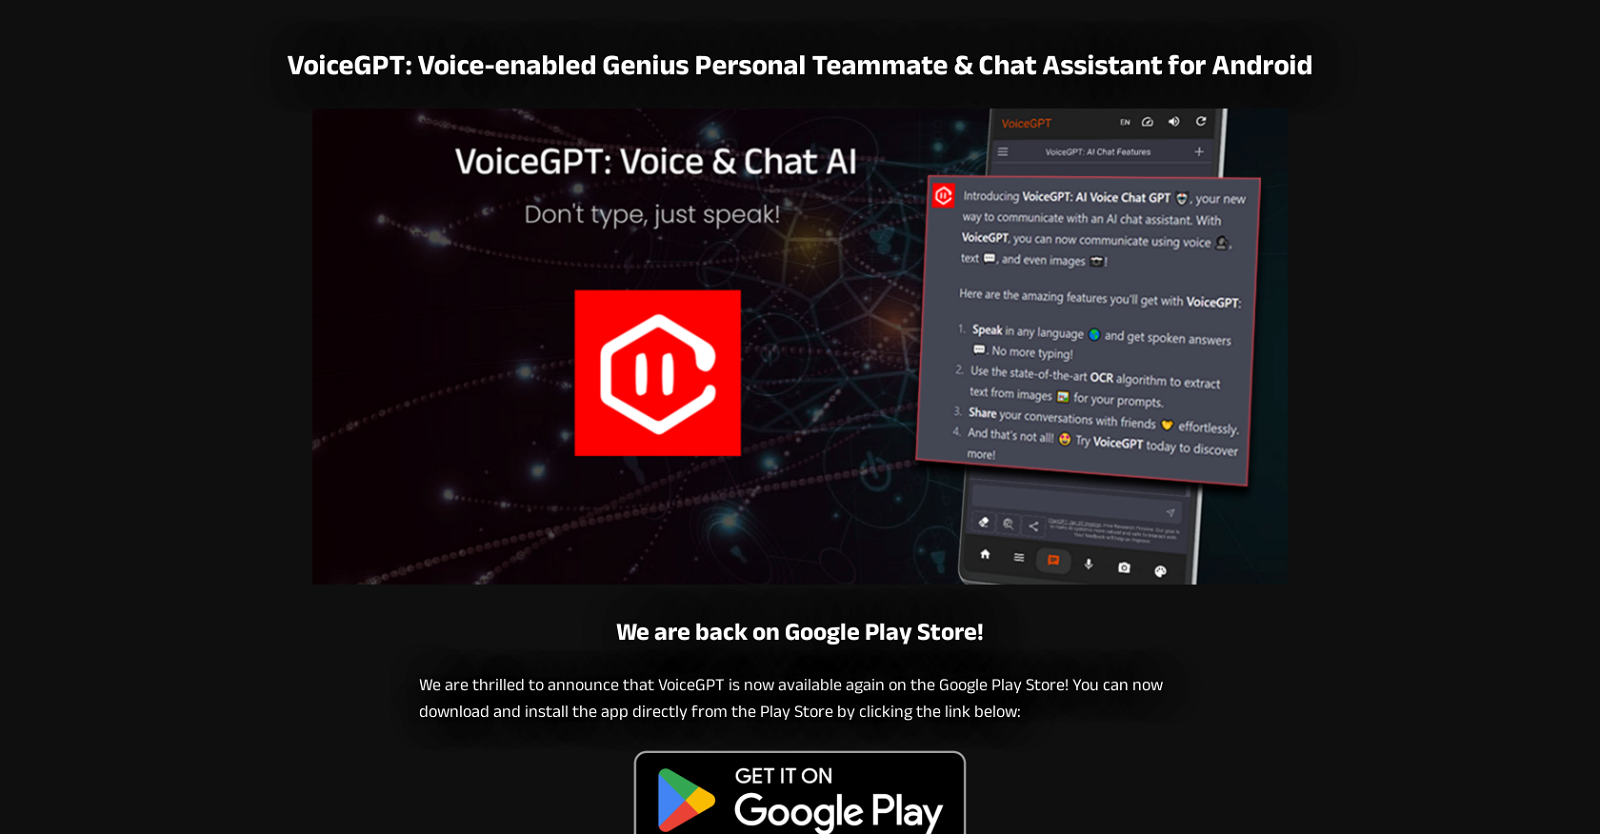 VoiceGPT website